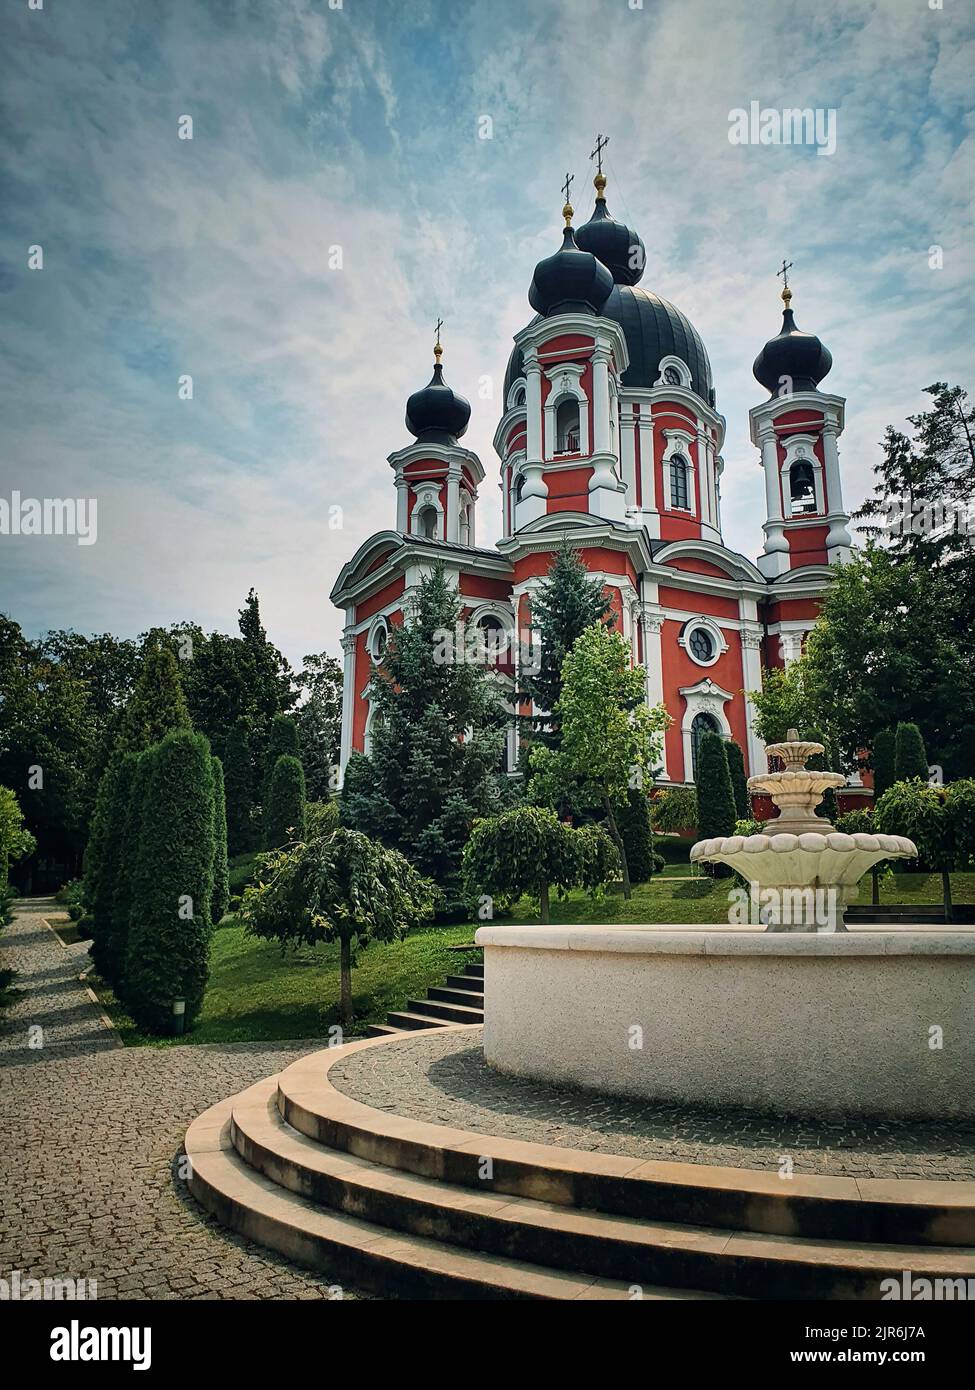 Curchi Kloster Blick von außen auf das berühmte Wahrzeichen in Orhei, Moldawien. Kirche im christlich-orthodoxen Stil, traditionell für die Kultur Osteuropas. Wunderschön Stockfoto